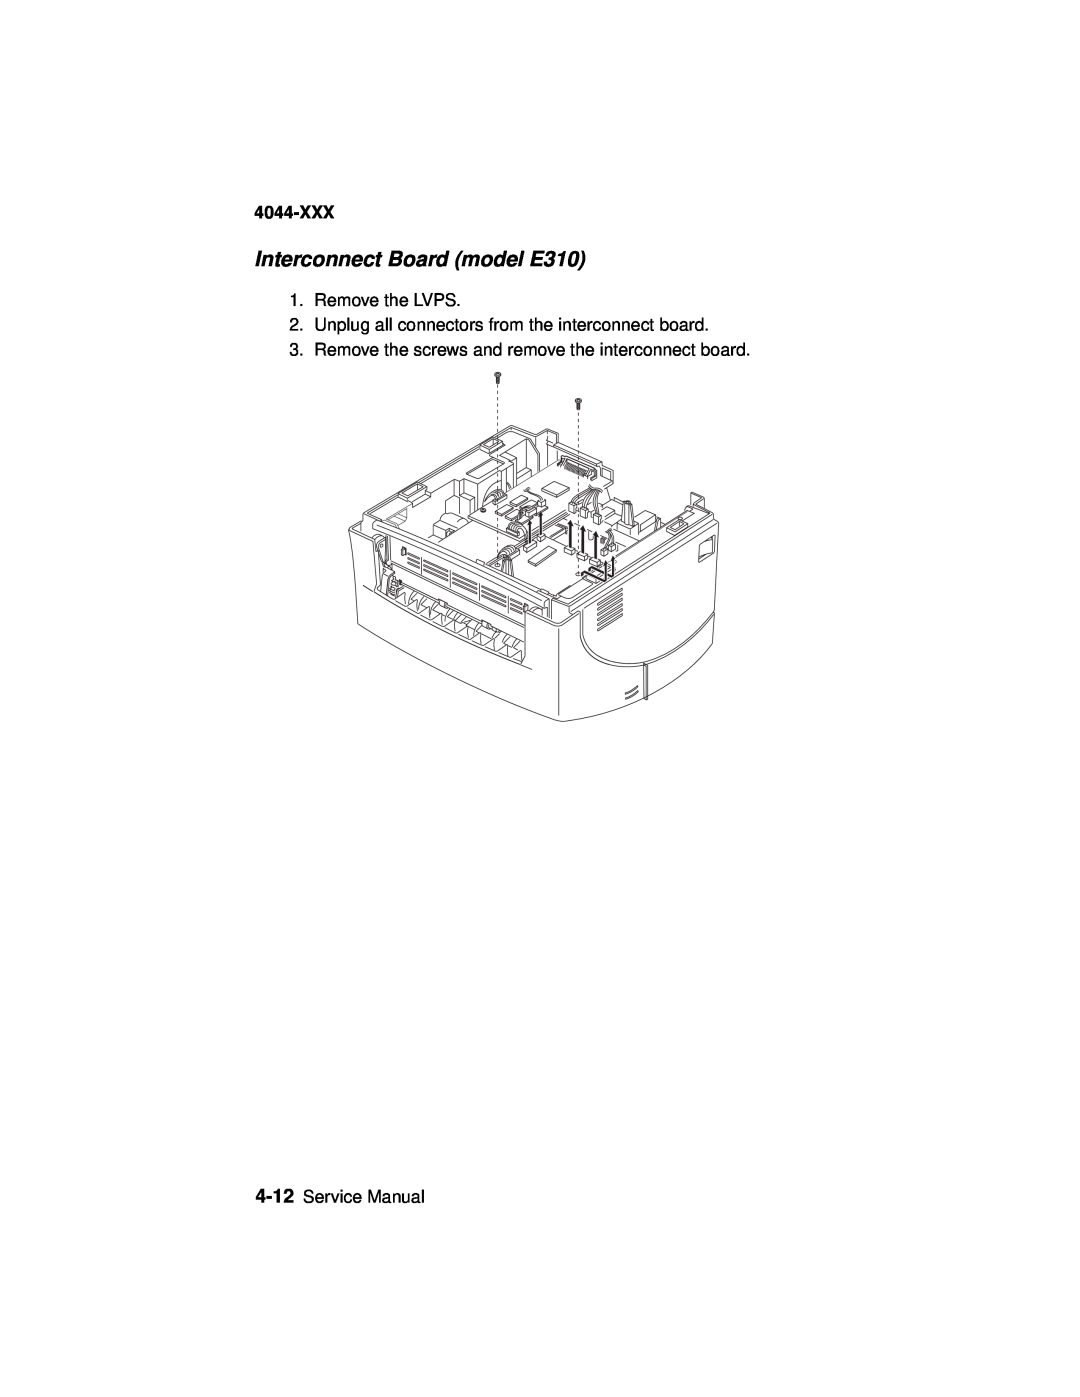 Lexmark 4044-XXX manual Interconnect Board model E310, Remove the LVPS, Service Manual 